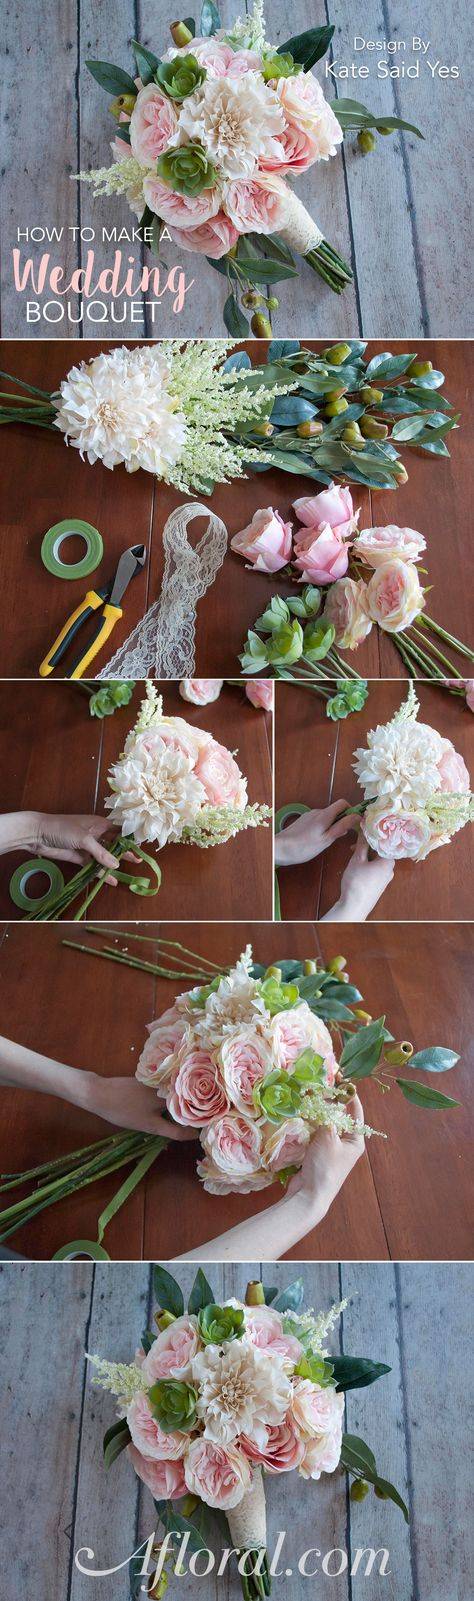 Как сделать дублер букета невесты своими руками